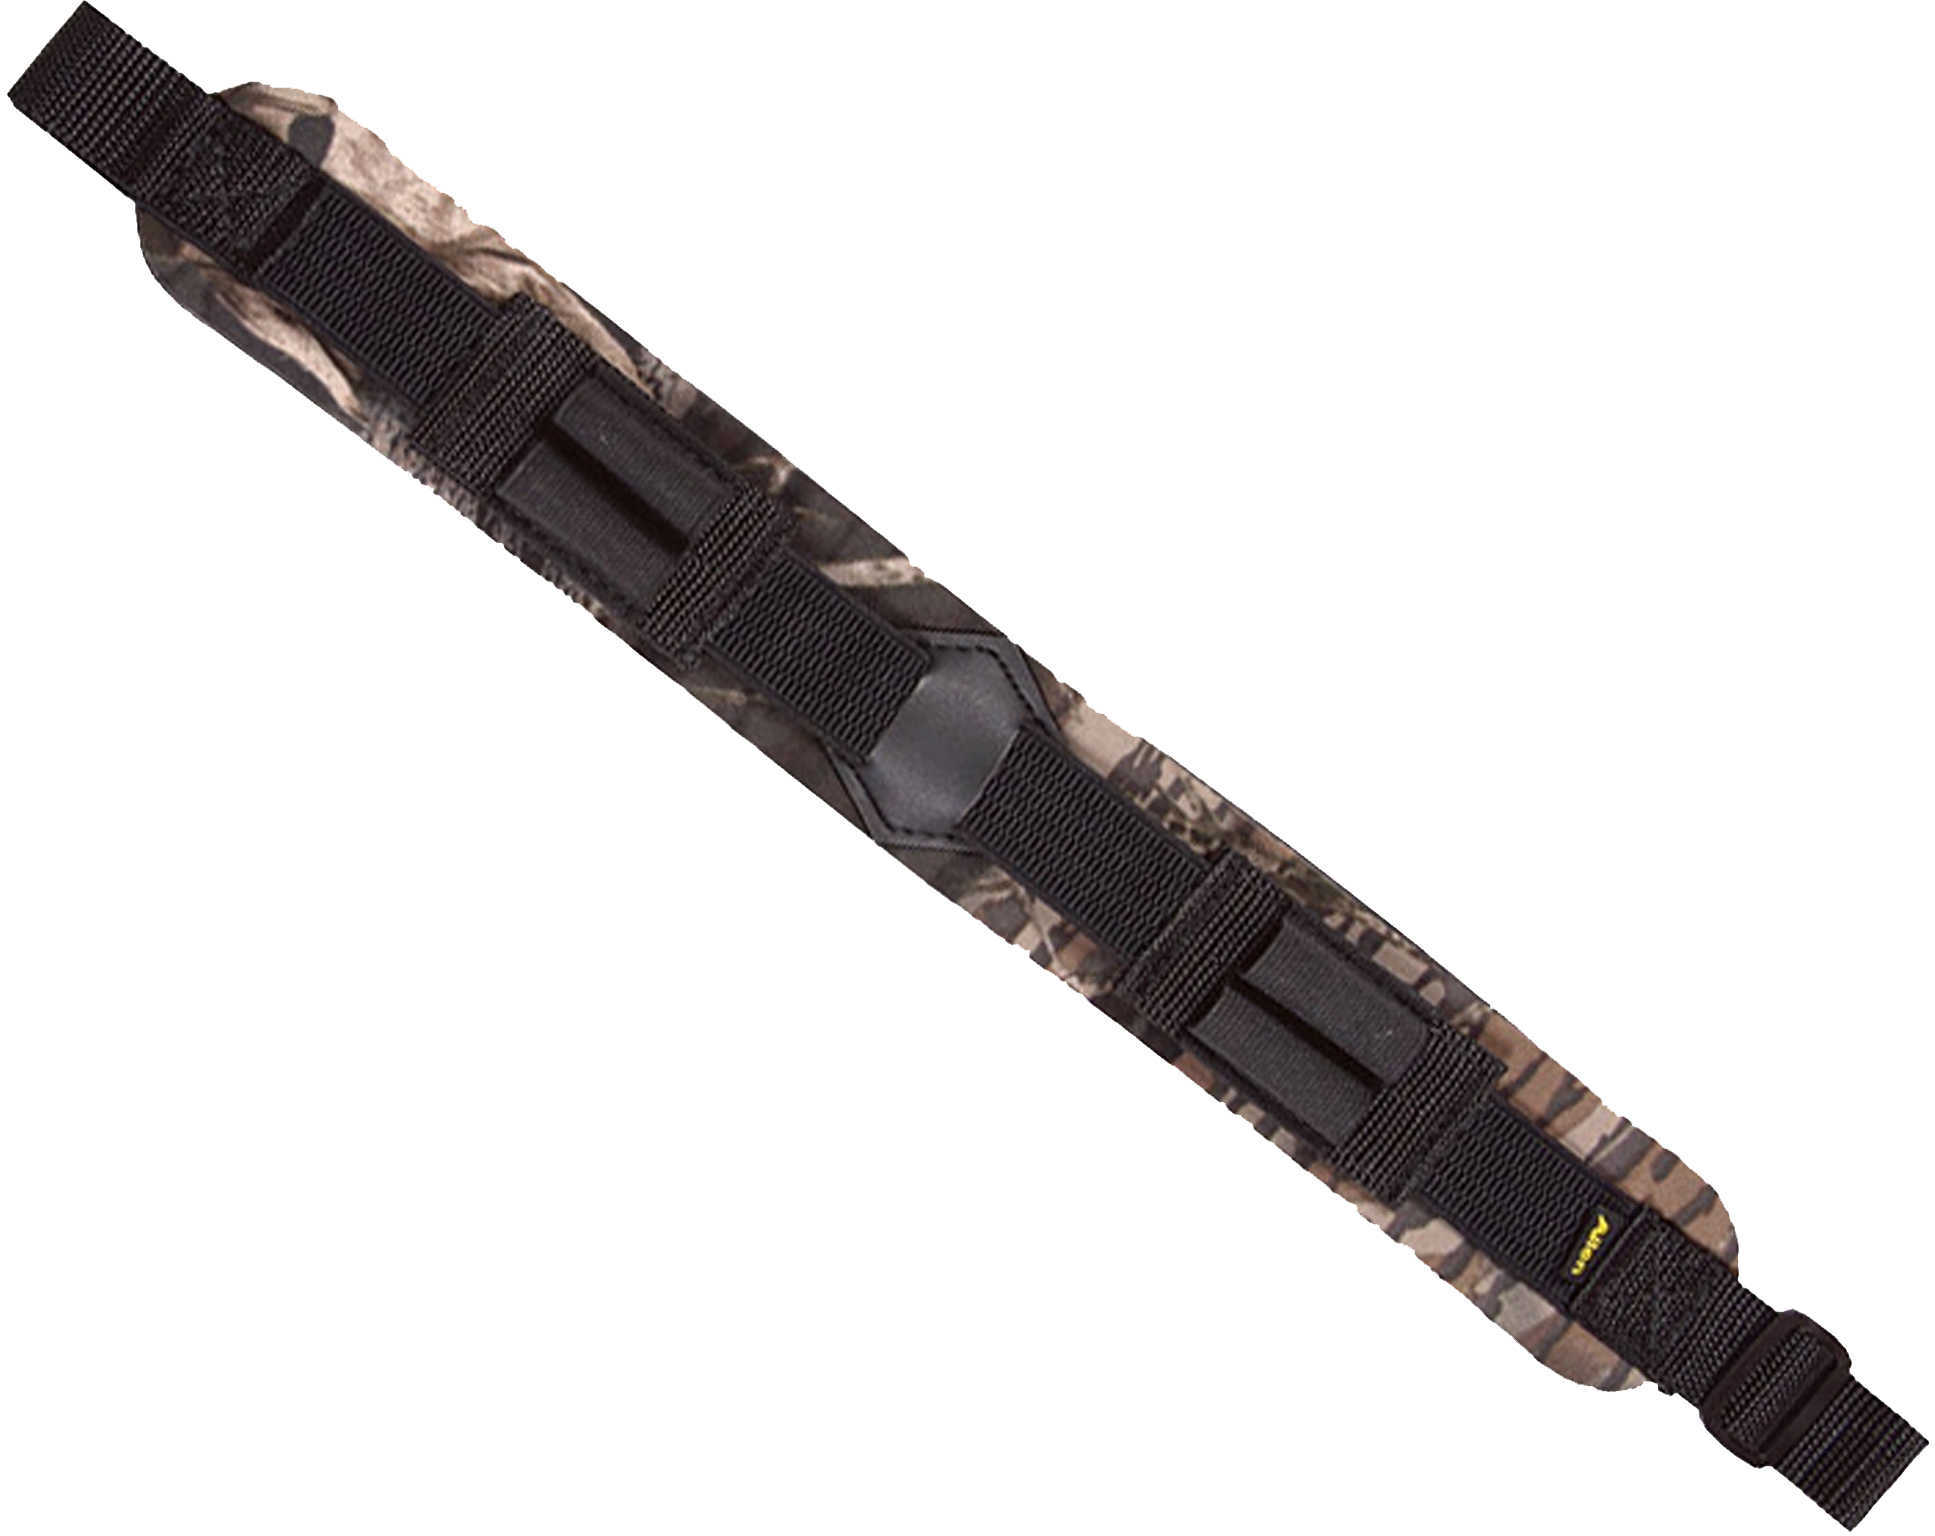 Allen Neoprene Mossy Oak Break Up Shotgun Sling With 4 Elastic Shell Loops Md: 8003